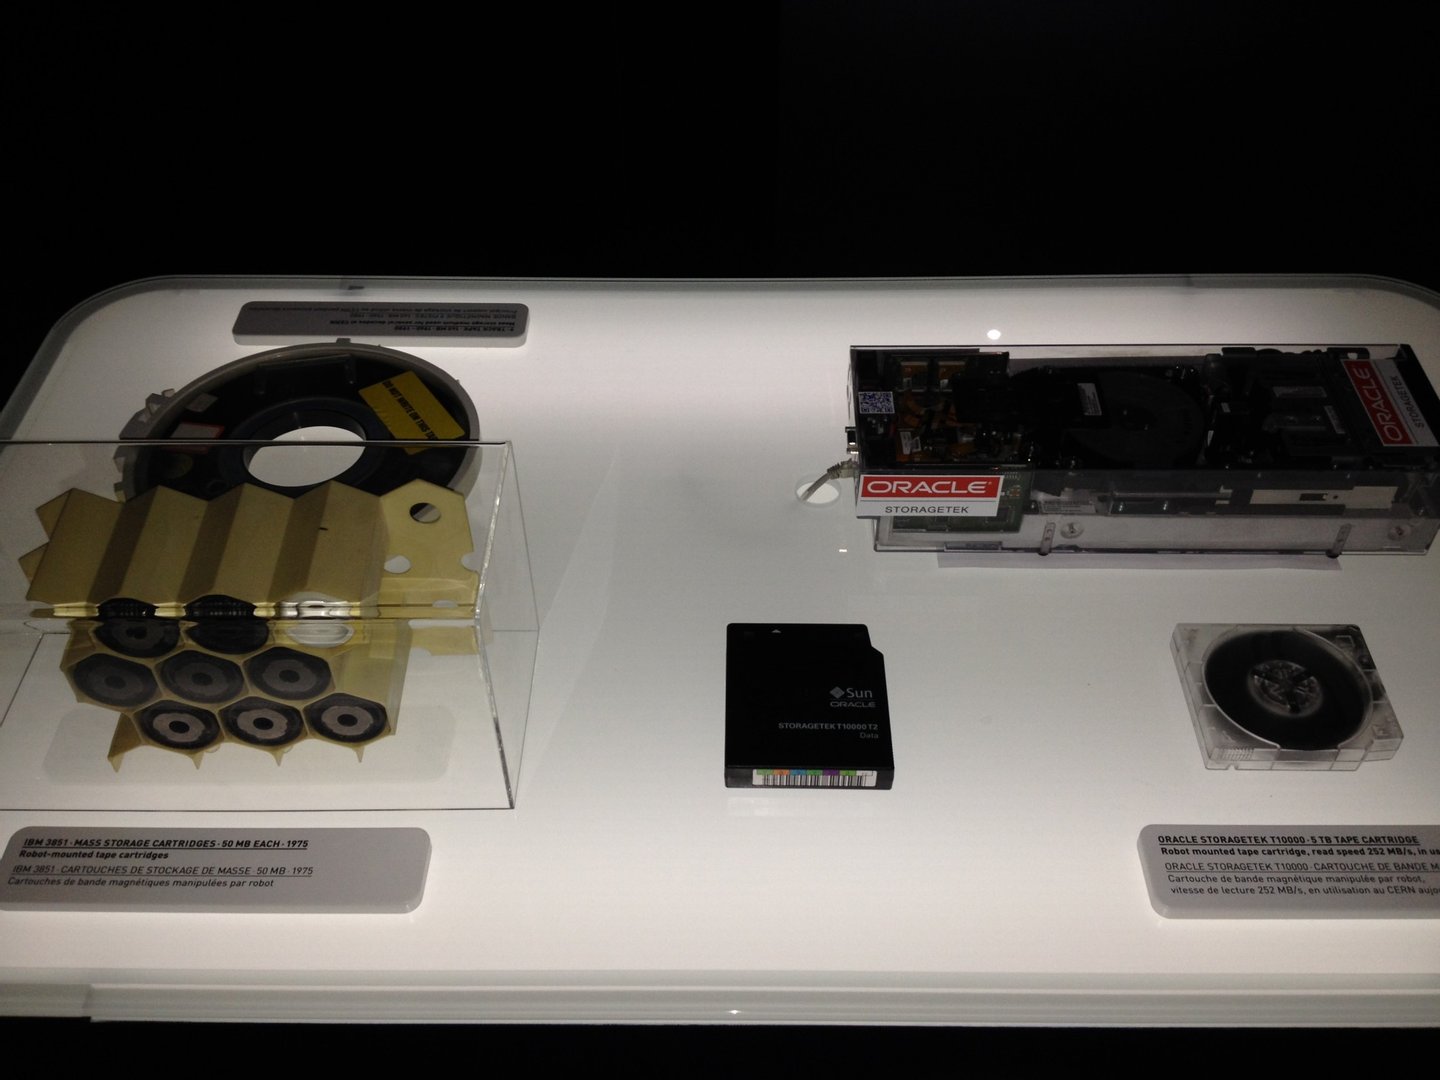 Tipos de cassetes onde os dados eram armazenados (imagem recolhida numa exposição no CERN Data Centre) - Observador